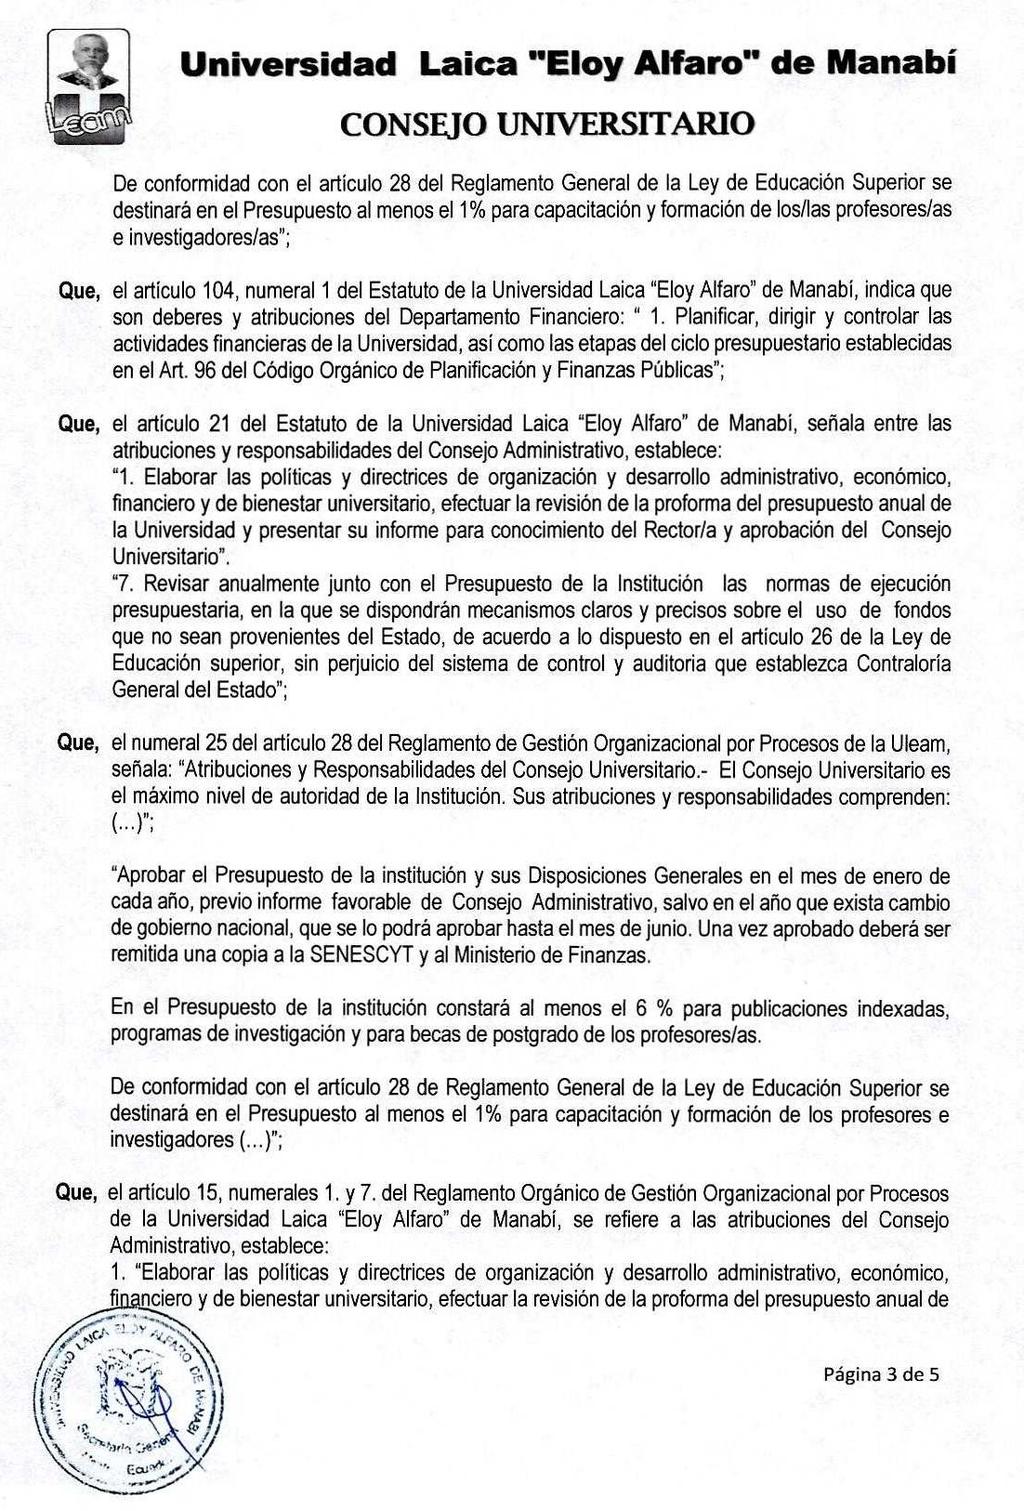 Que, el artículo 21 del Estatuto de la Universidad Laica "Eloy Alfara" de Manabí, señala entre las atribuciones y responsabilidades del Consejo Administrativo, establece: "1.